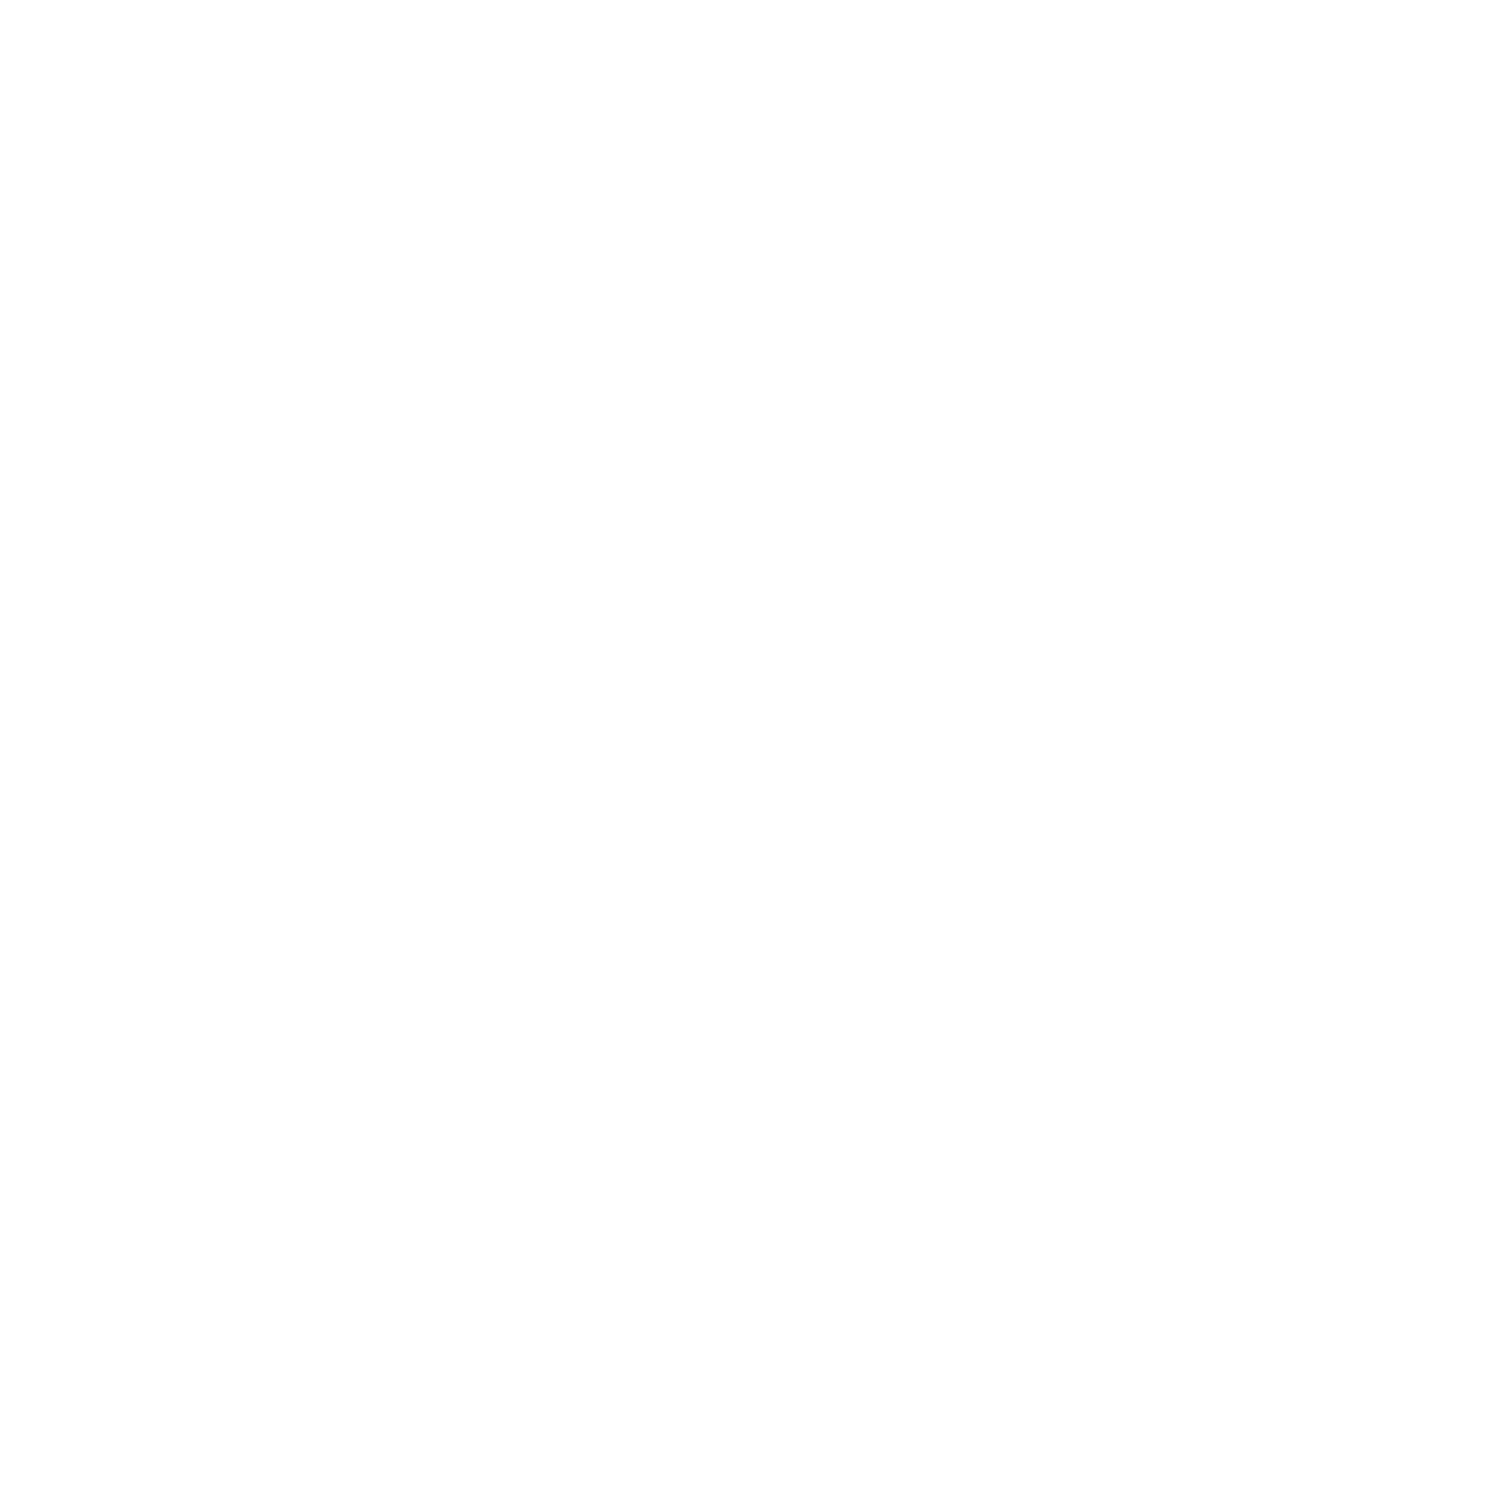 Bill Lusk Co. 